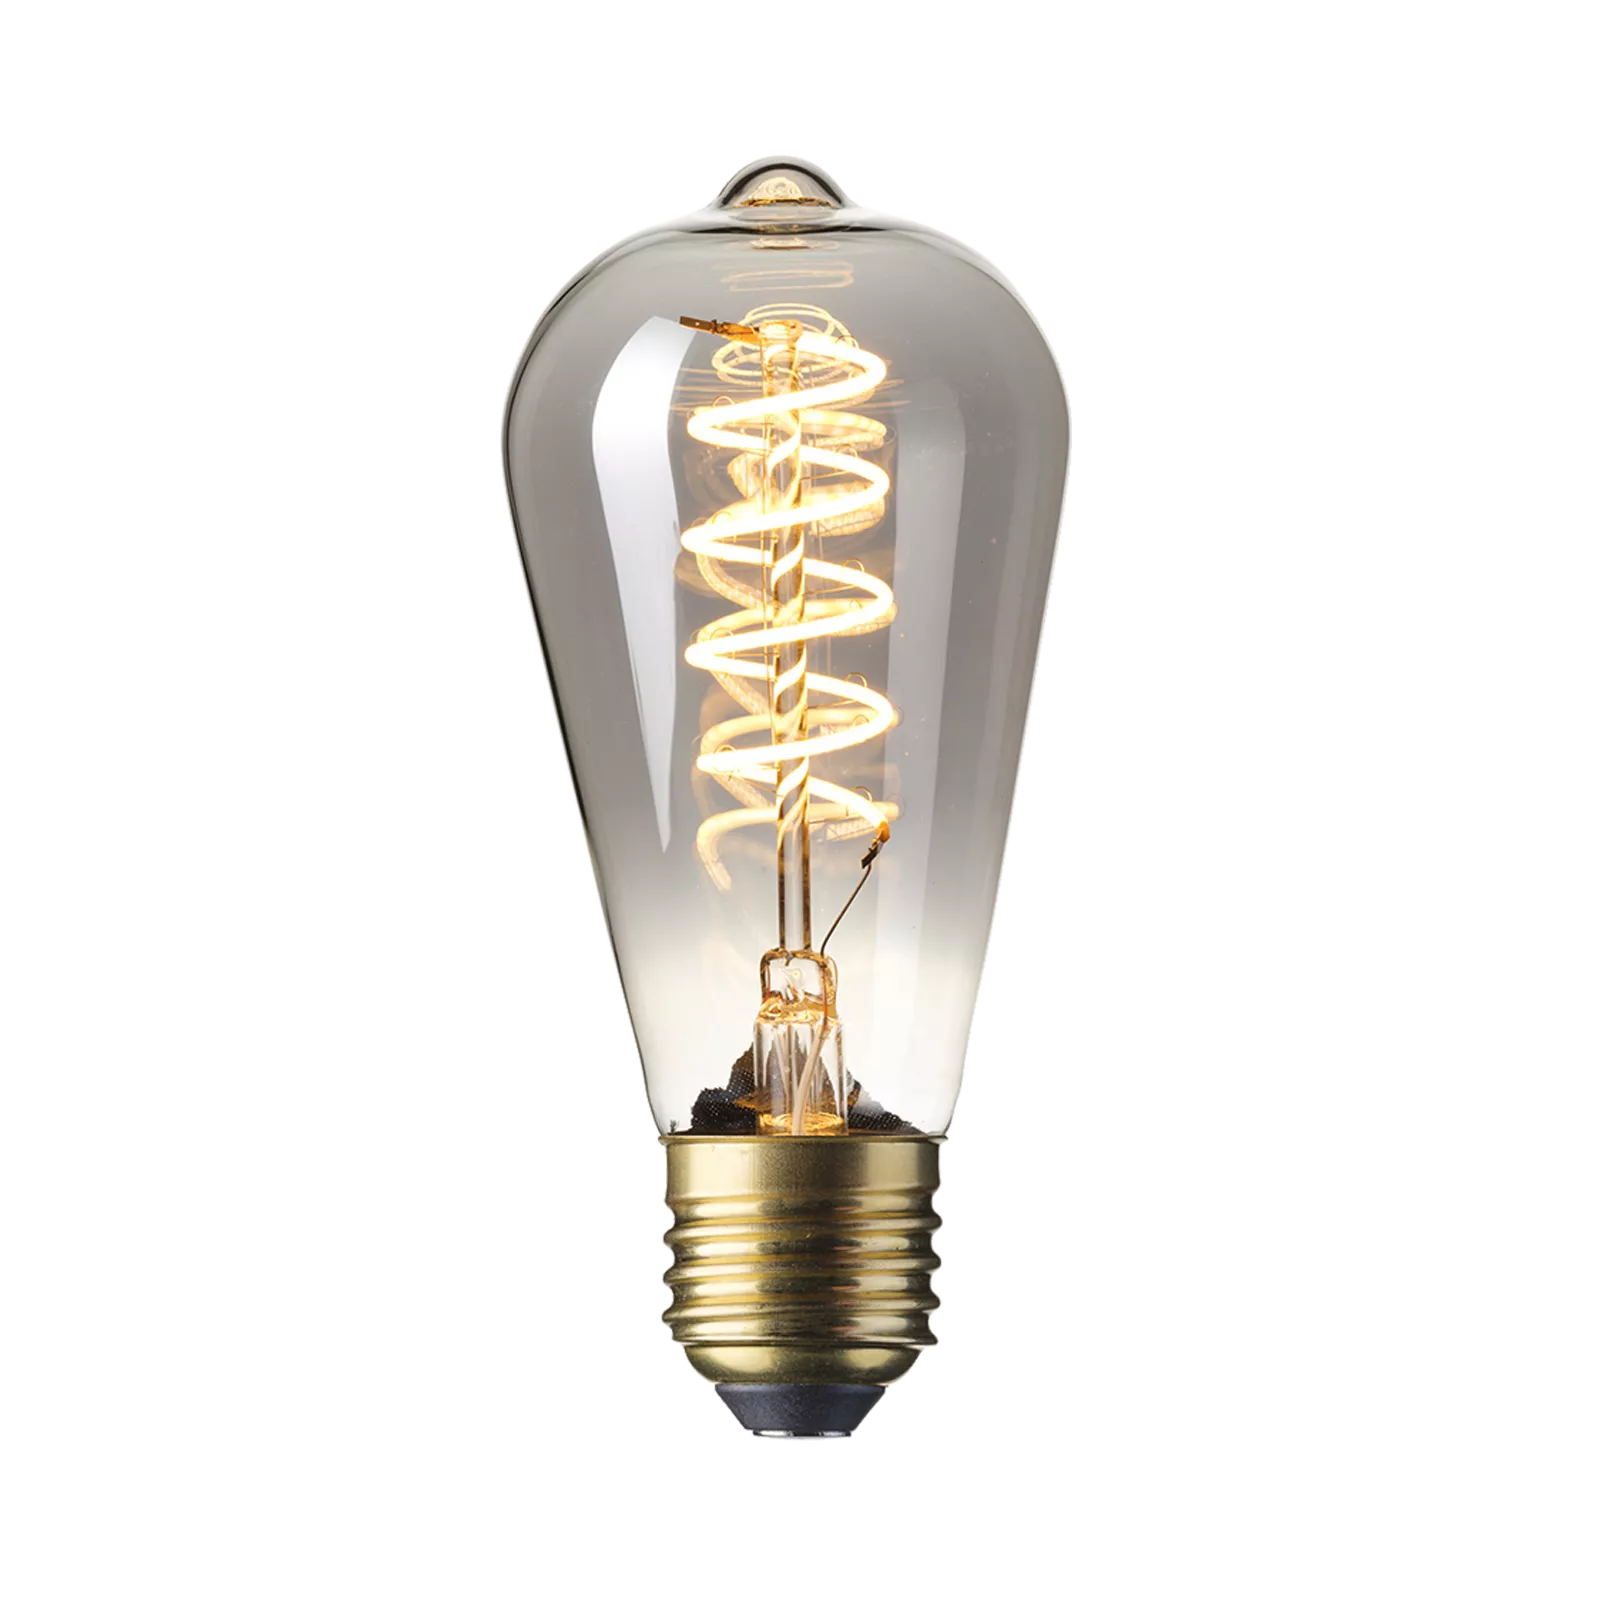 LED lamp Flex Rustic - Titanium